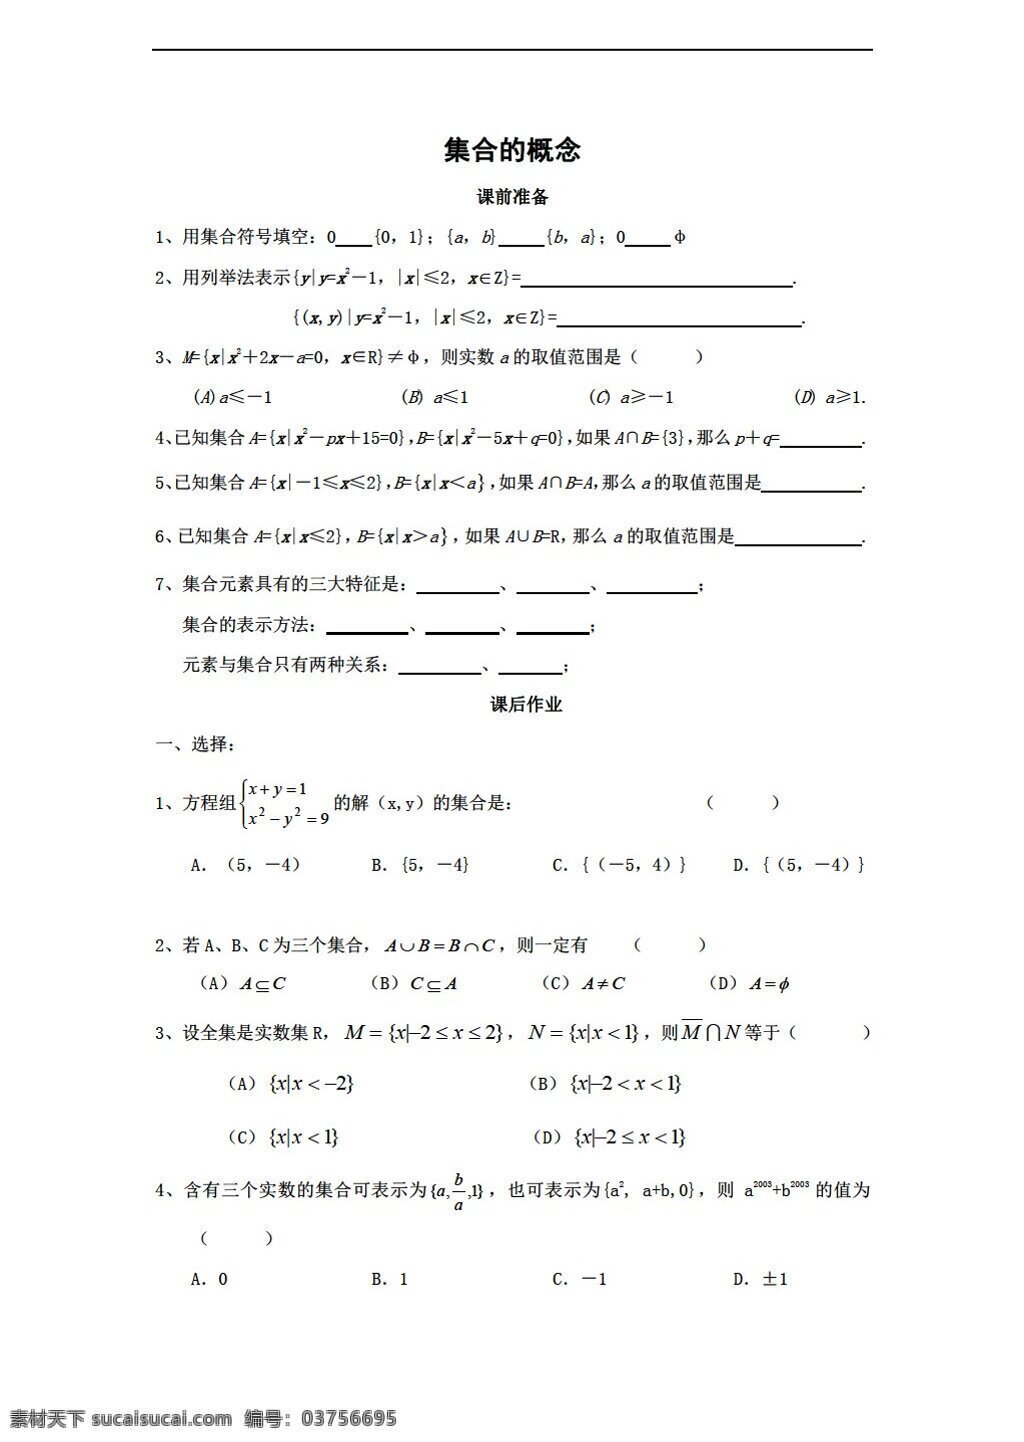 数学 高中 年级 上 集合 概念 测试 沪教版 高中一年级 第一学期 试卷